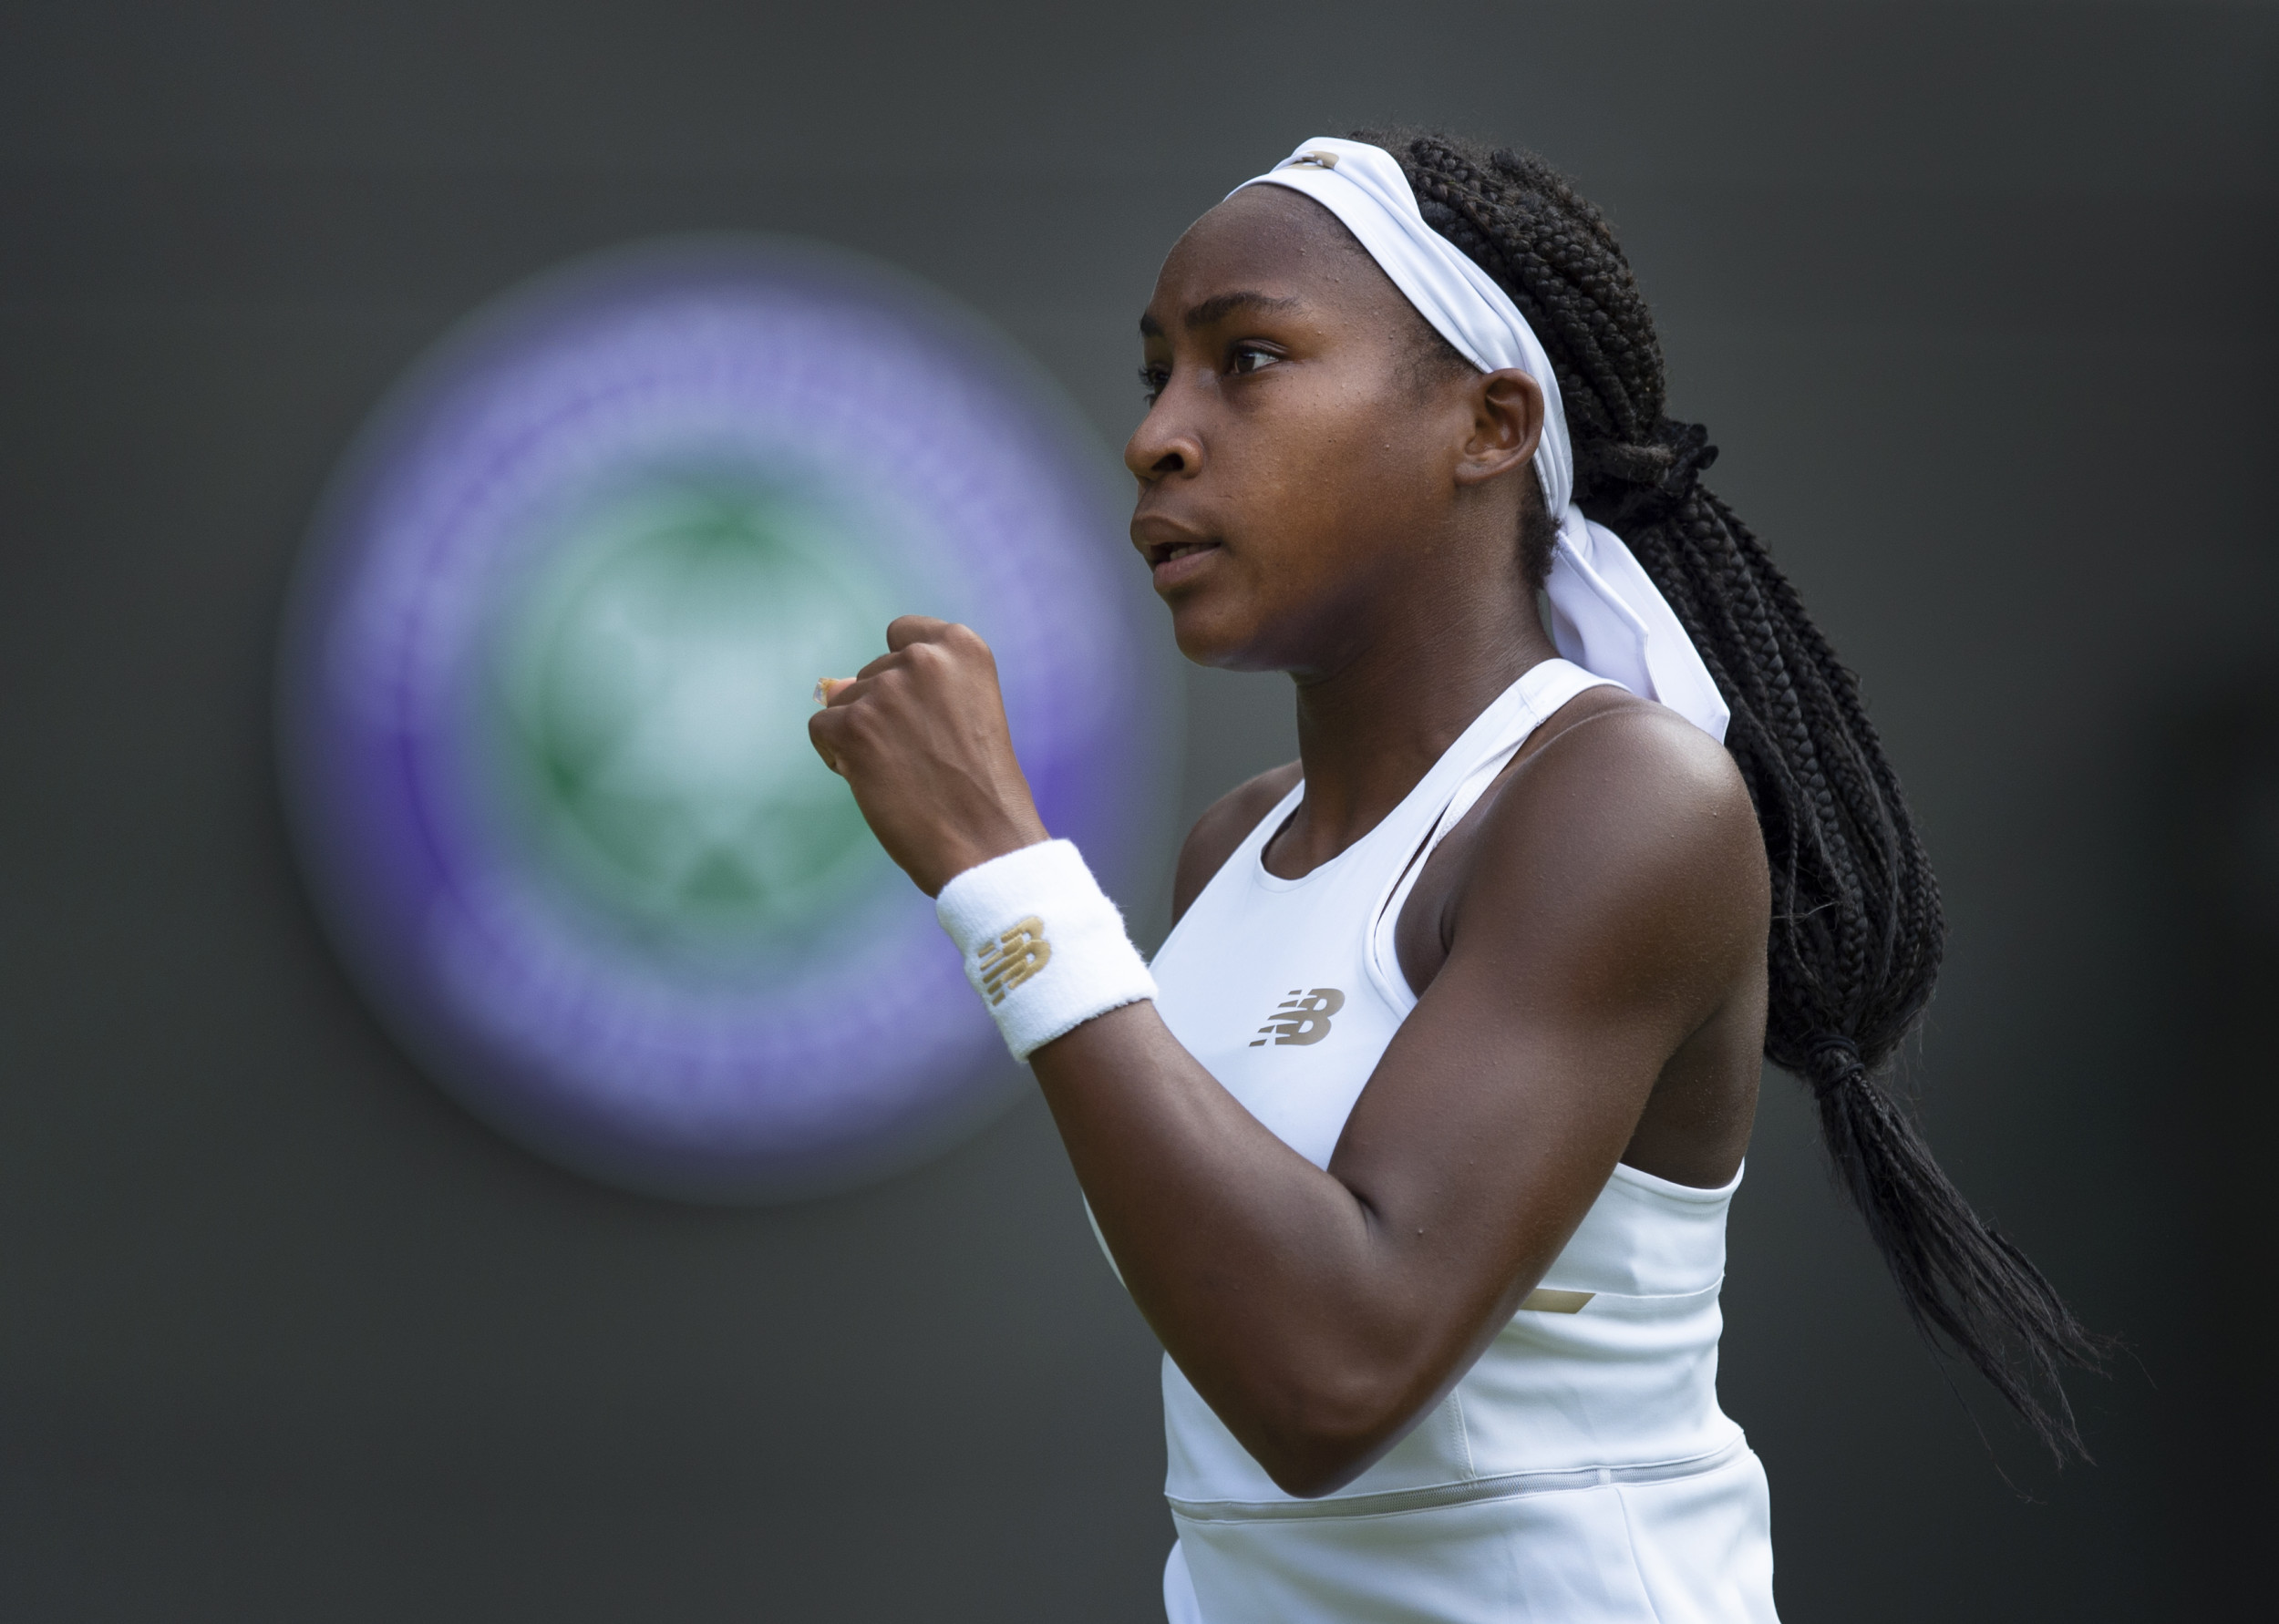 Wimbledon 2019: How to Watch Cori 'Coco' Gauff, Novak ...